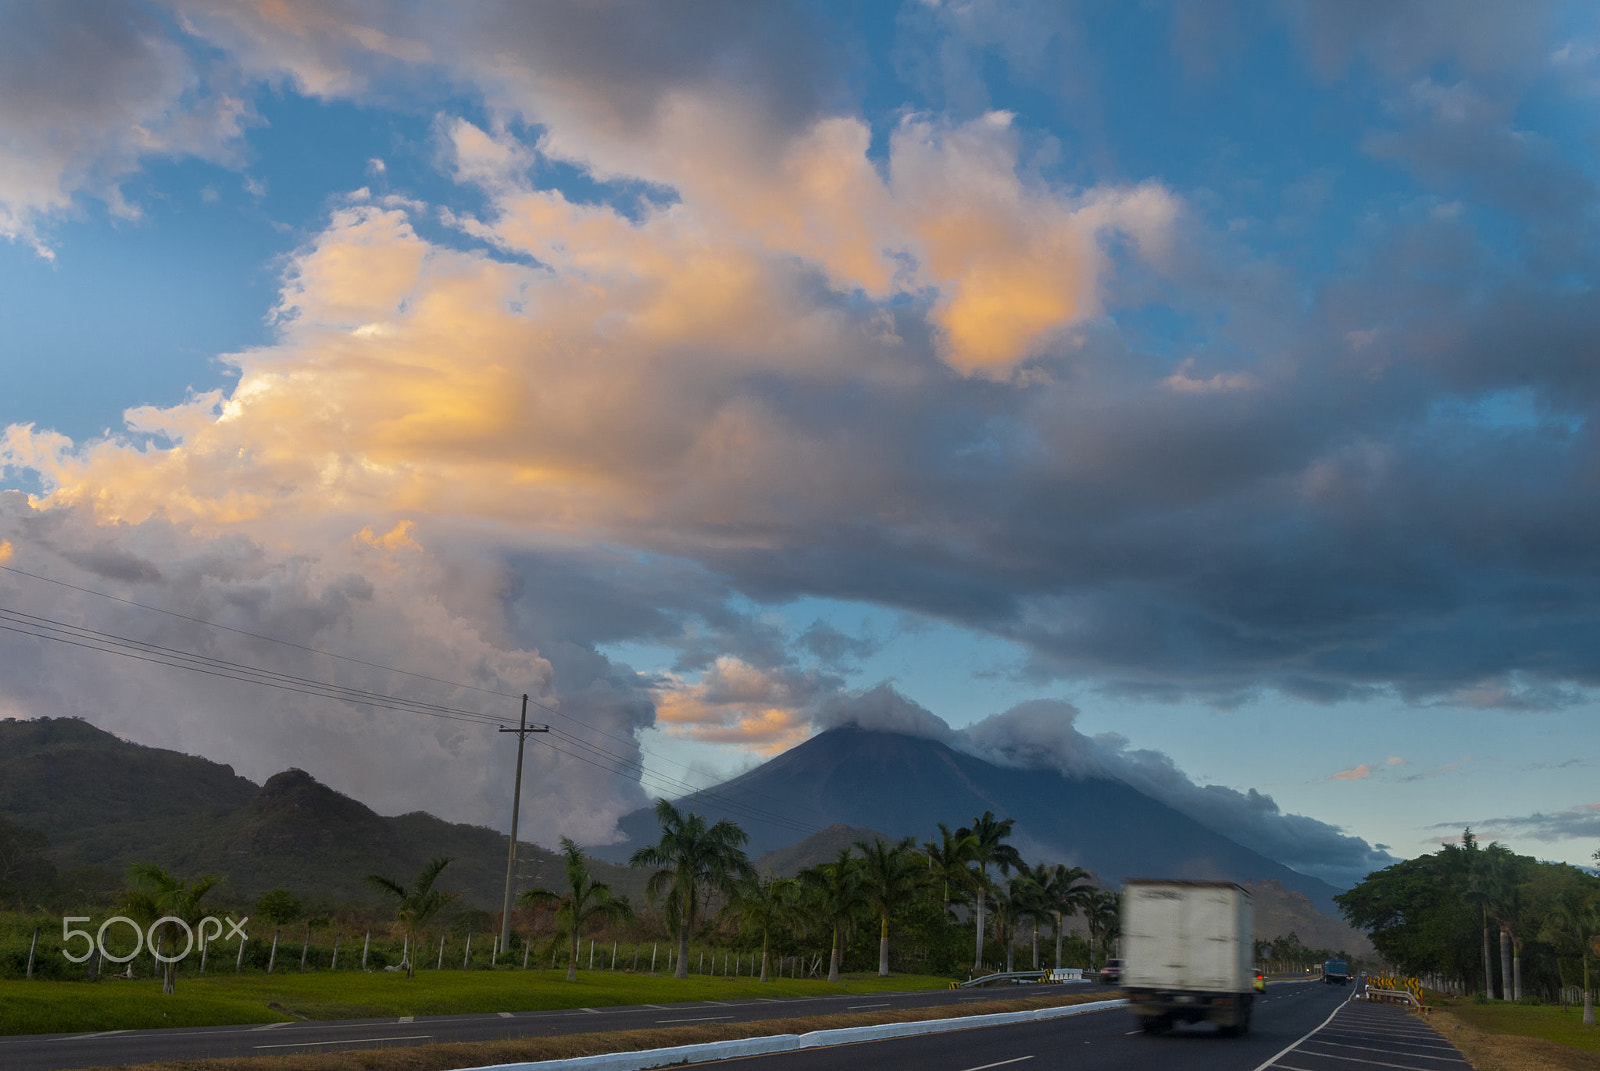 Nikon D200 sample photo. Sunset on palin escuintla guatemala highway photography